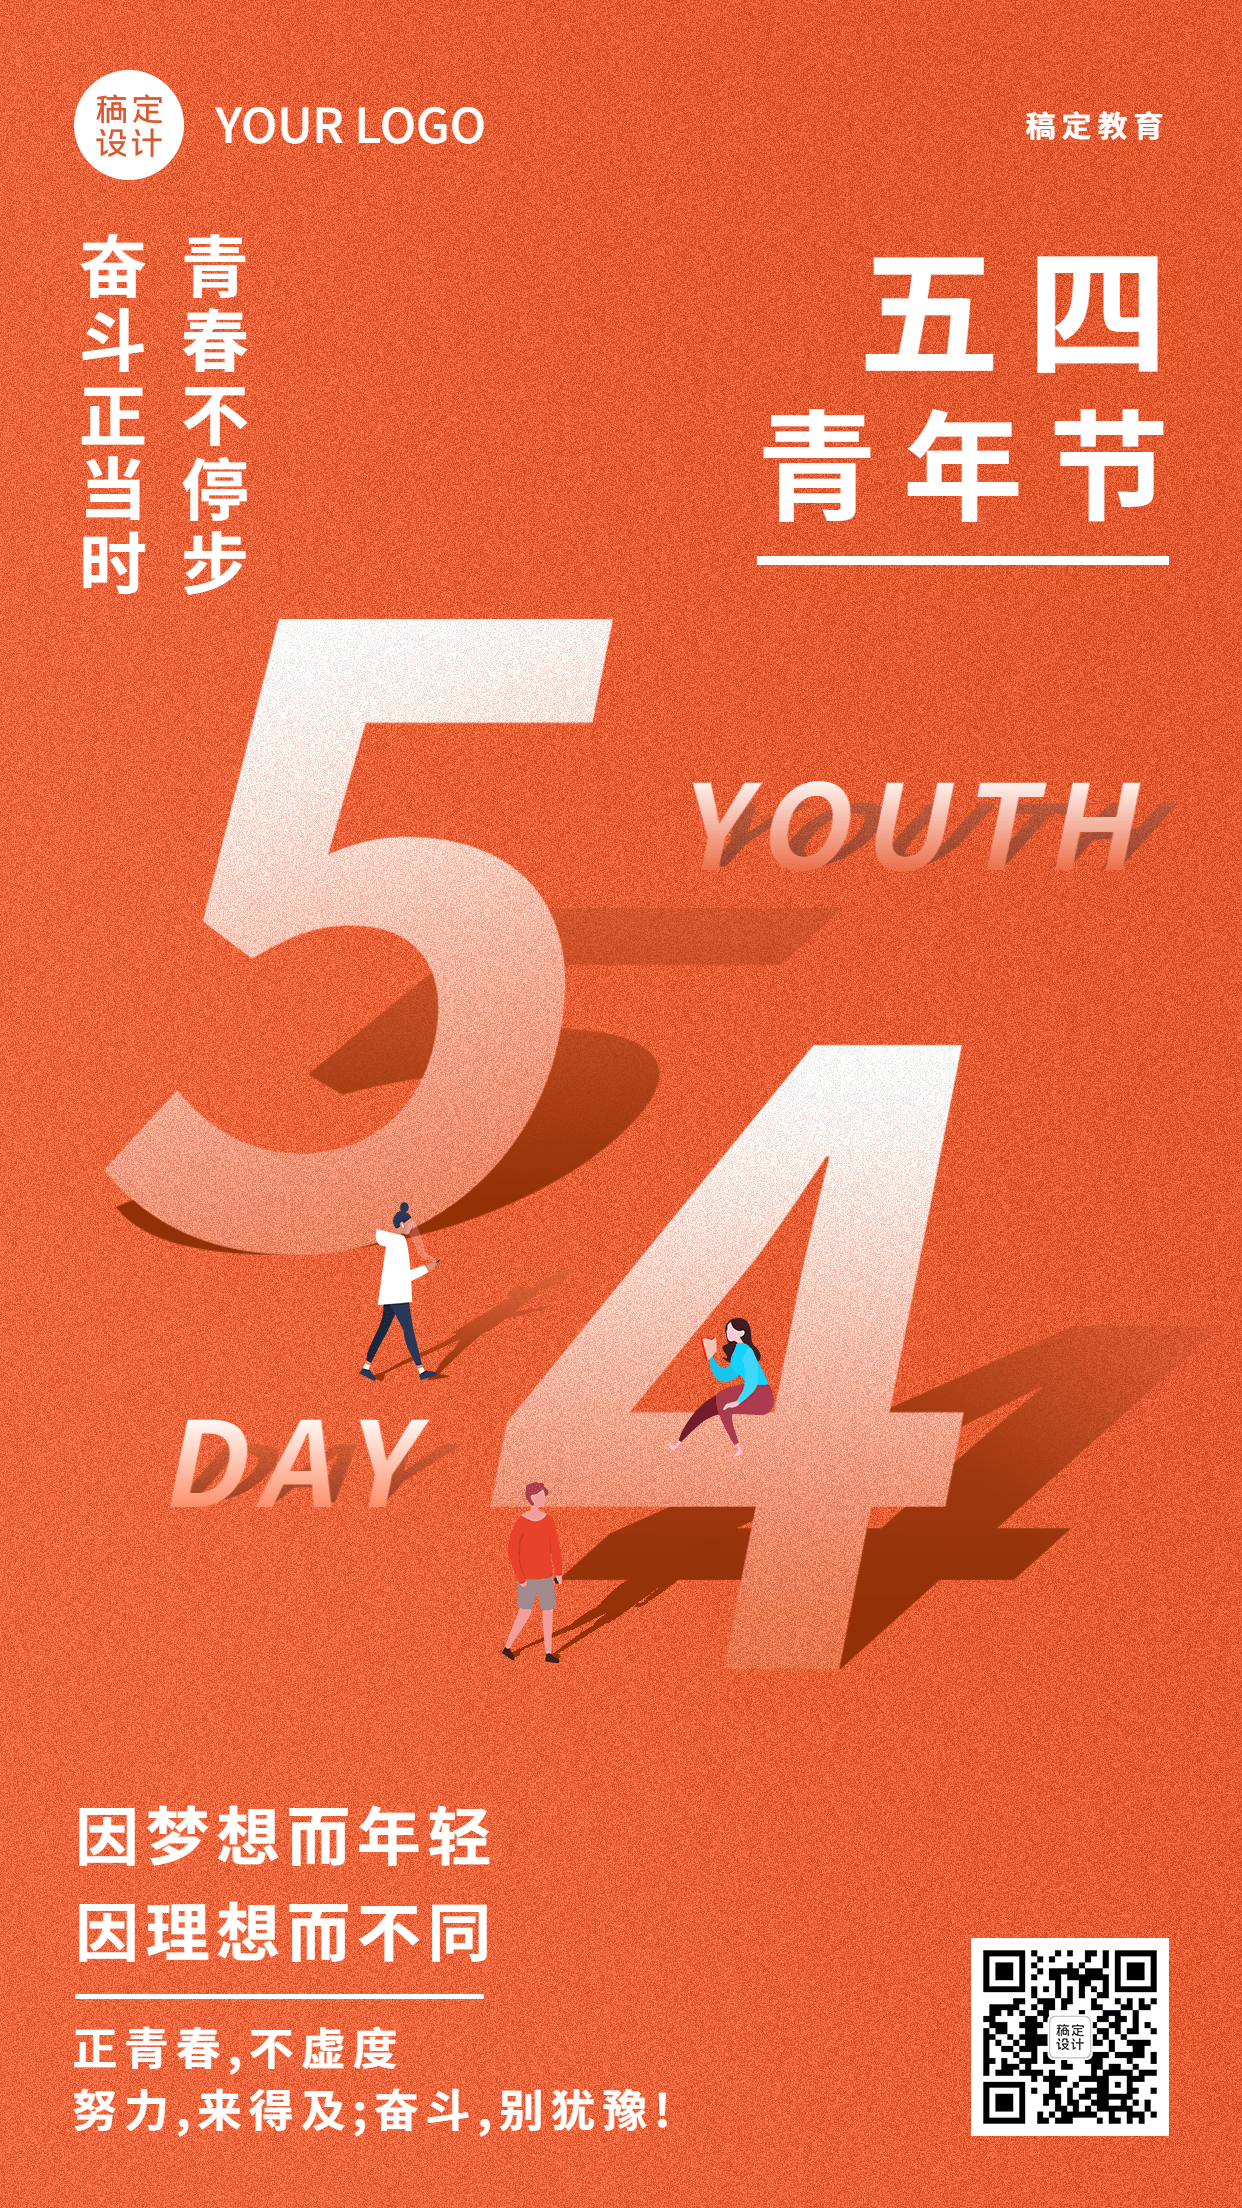 五四青年节祝福简约大气手机海报